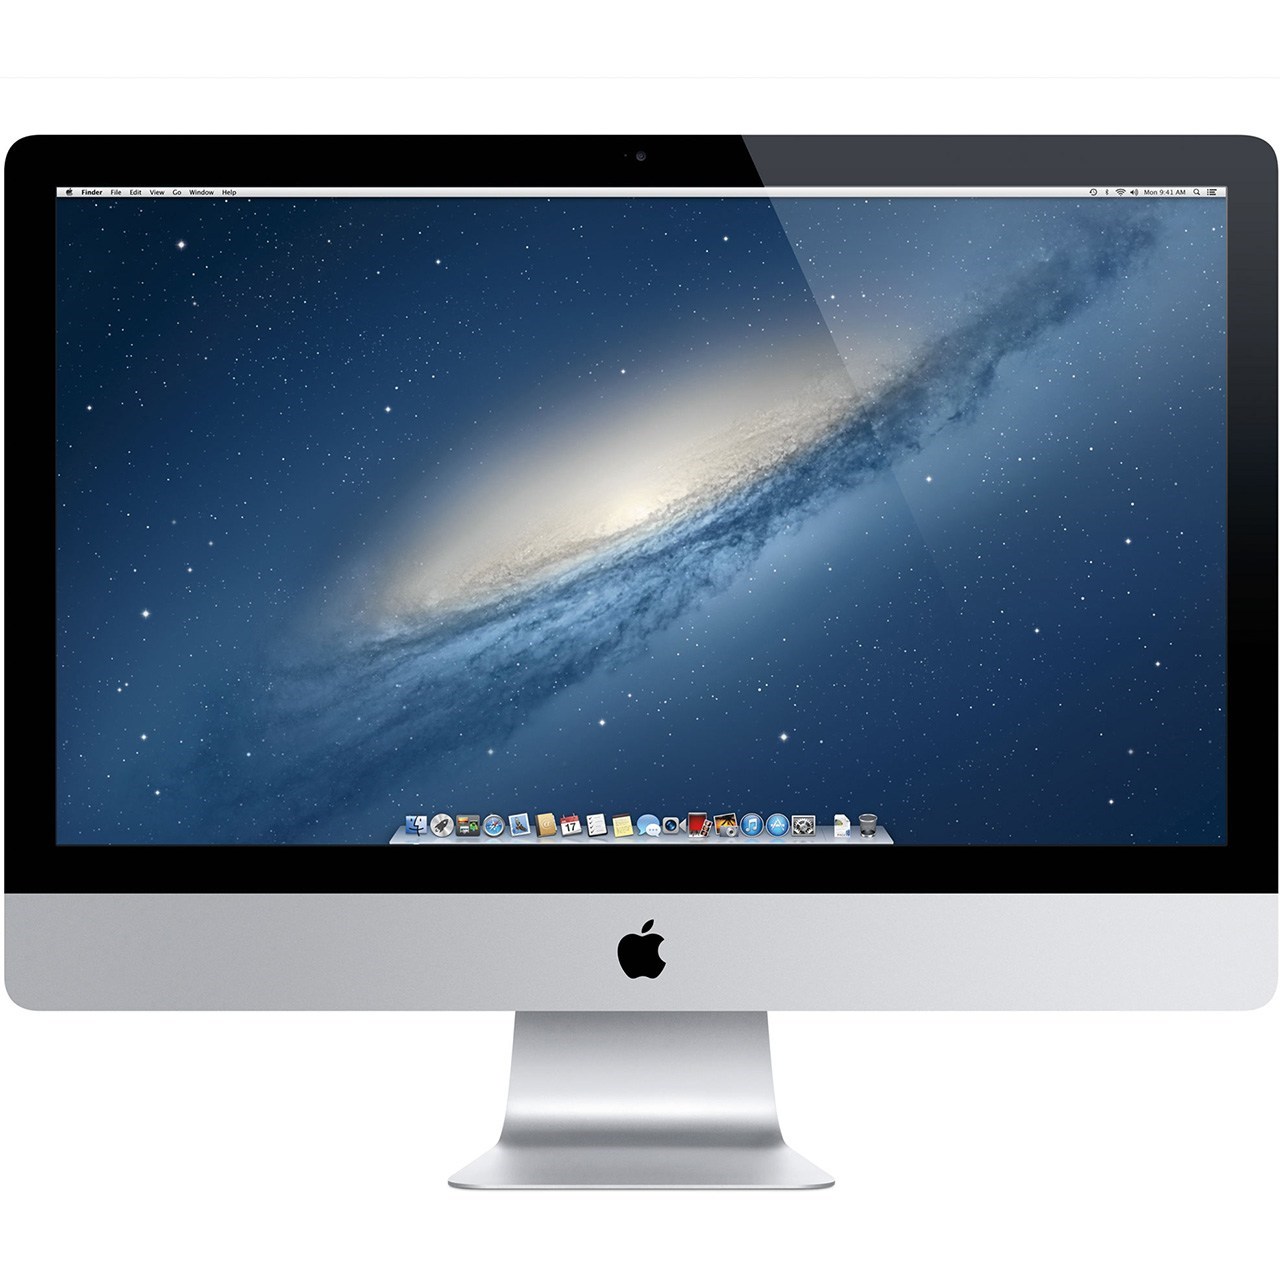 کامپیوتر همه کاره 27 اینچی اپل مدل iMac 2015 با صفحه نمایش رتینا 5K